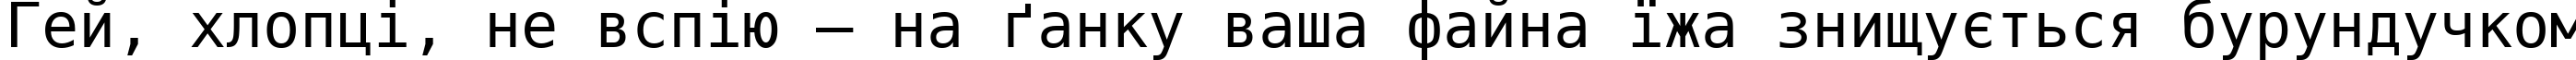 Пример написания шрифтом DejaVu Sans Mono текста на украинском